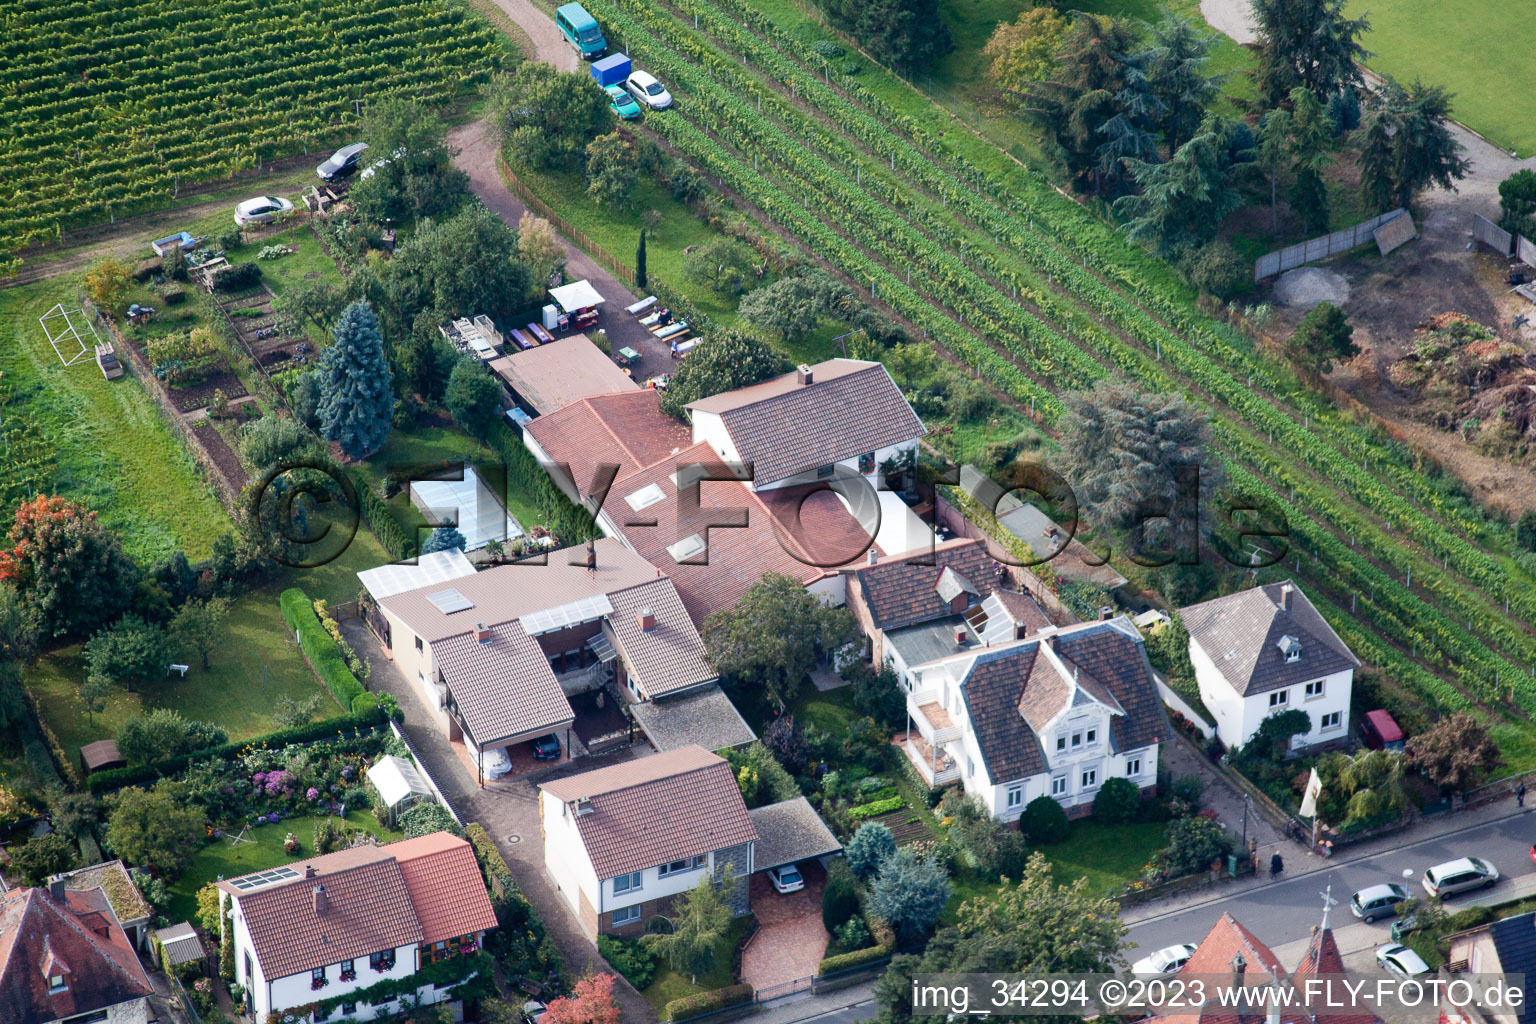 Luftbild von Wachenheim an der Weinstraße, Zimmermann's Apfeltage im Bundesland Rheinland-Pfalz, Deutschland